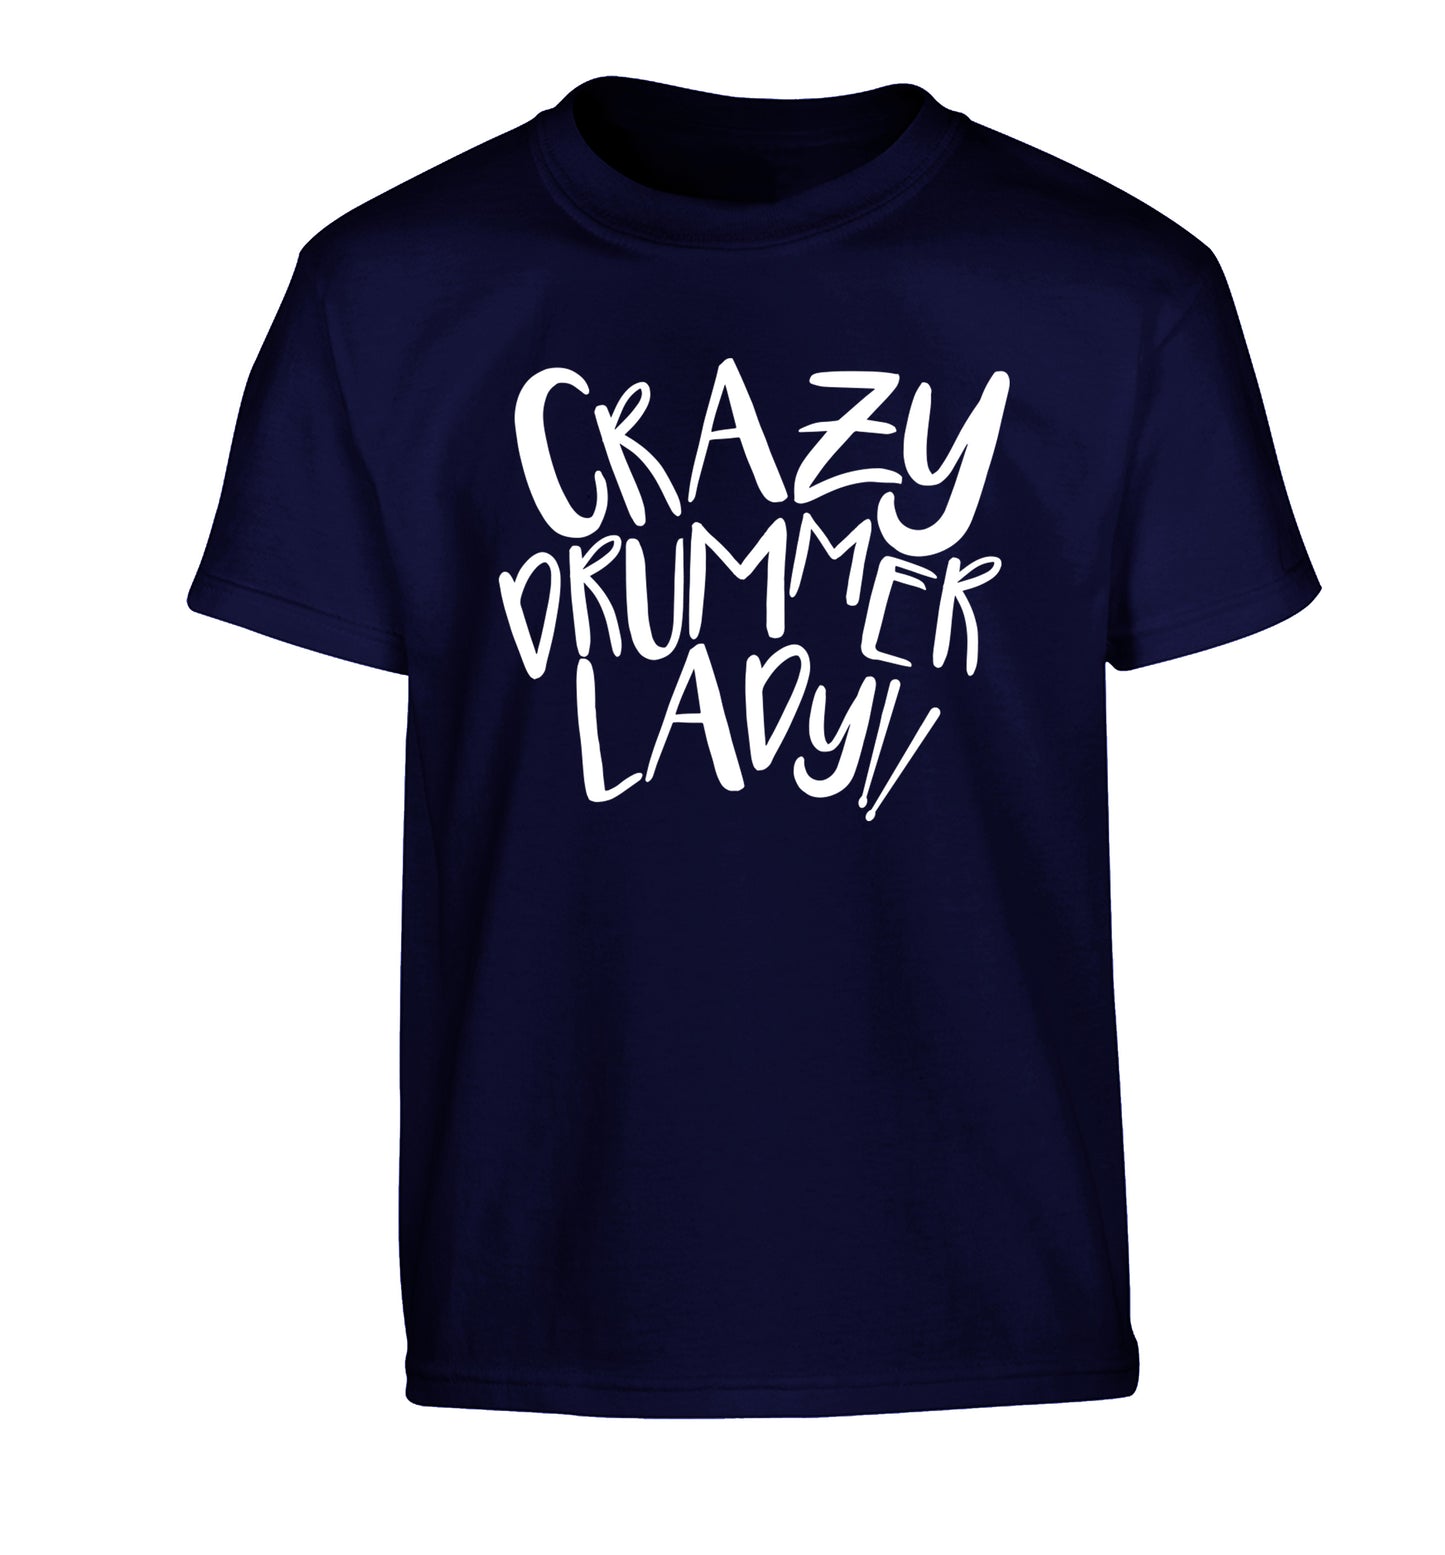 Crazy drummer lady Children's navy Tshirt 12-14 Years